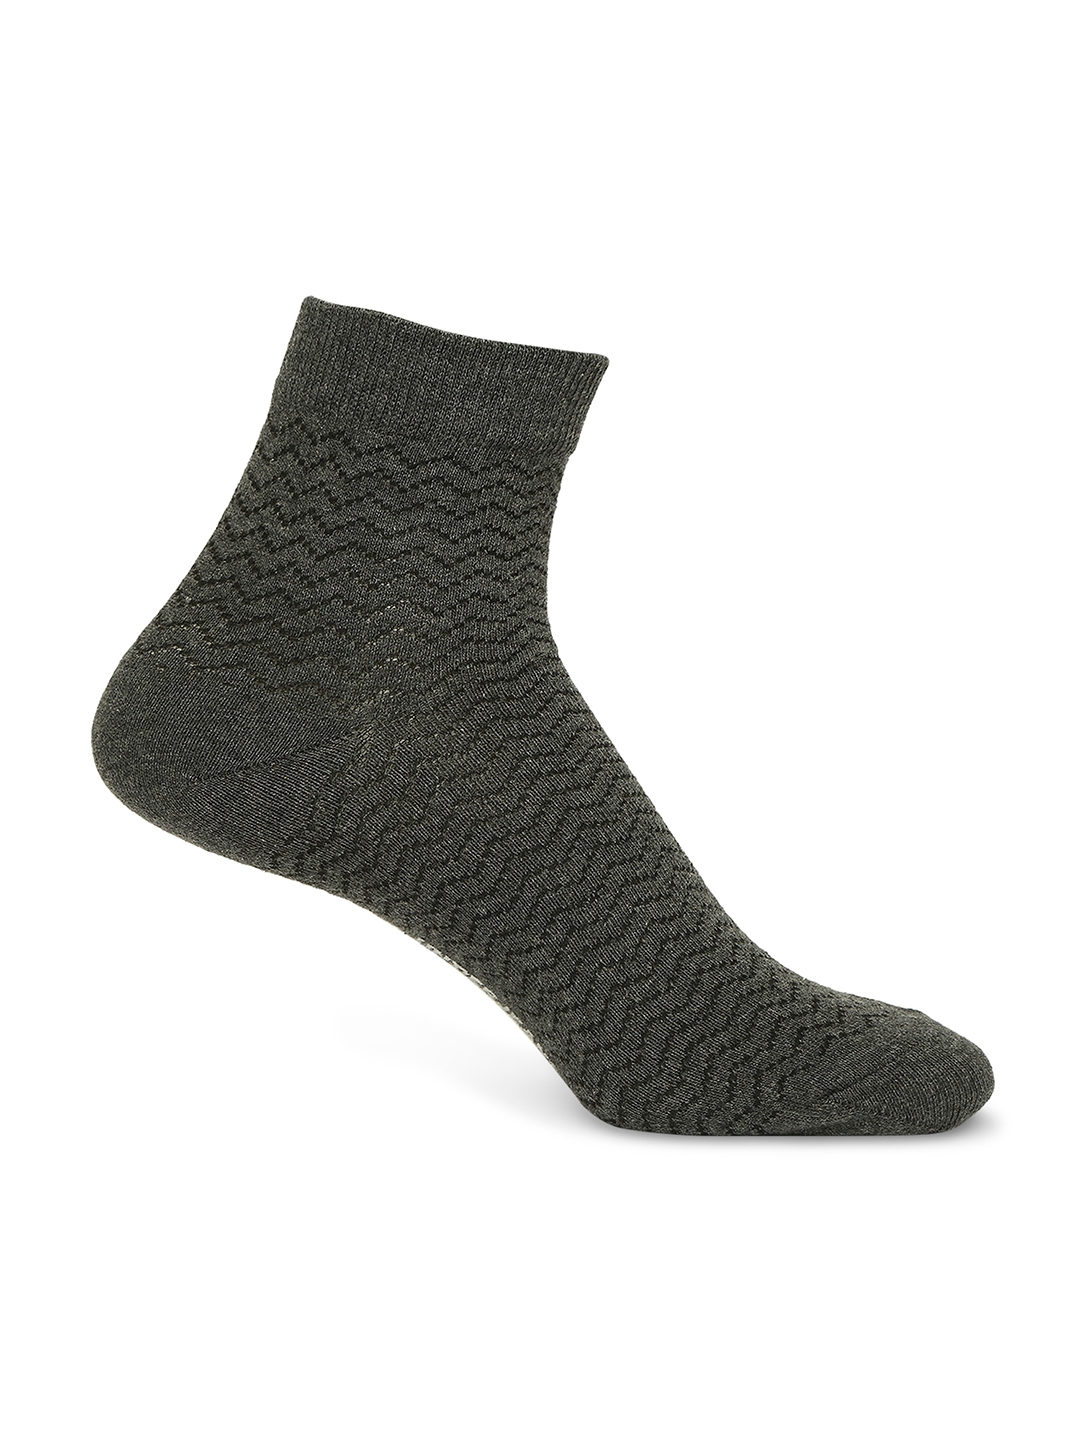 spykar | Underjeans by Spykar Premium White & Anthra Melange Ankle Length Socks - Pack Of 2 2